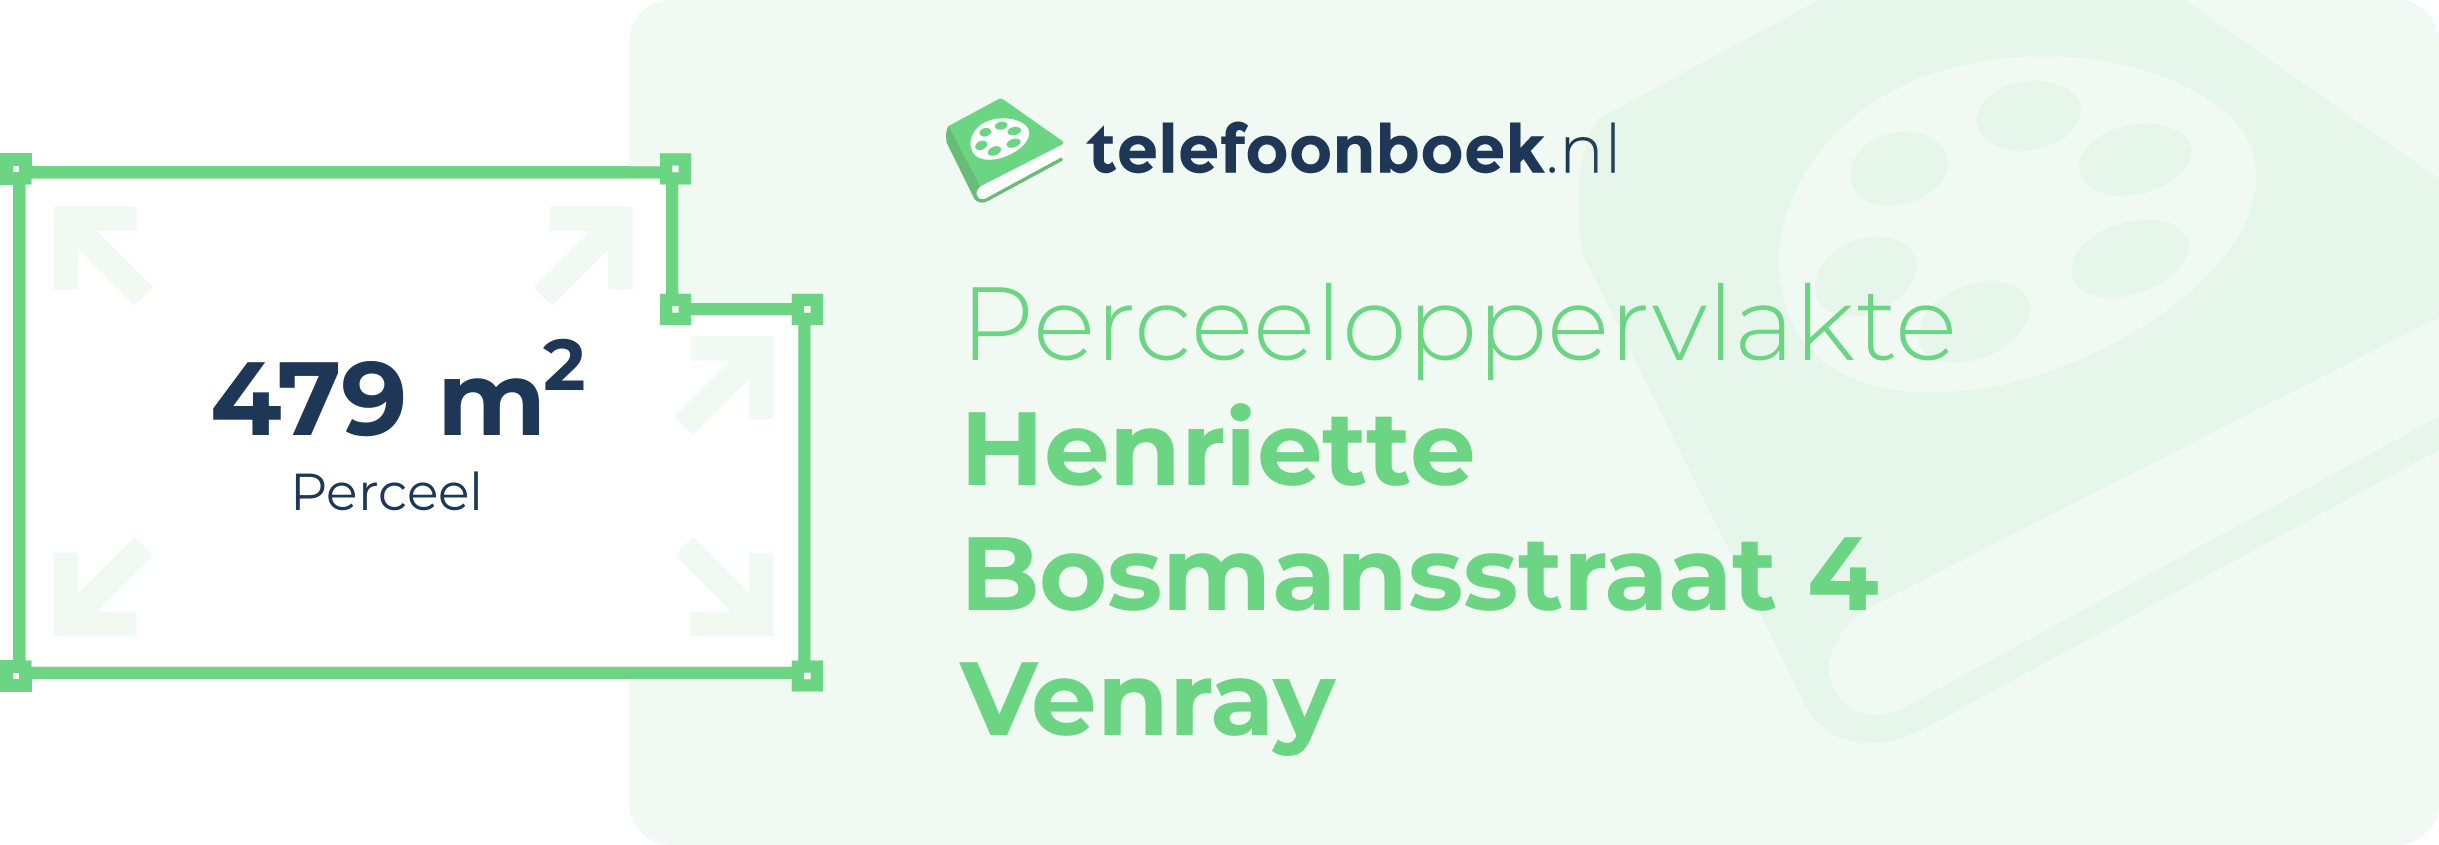 Perceeloppervlakte Henriette Bosmansstraat 4 Venray